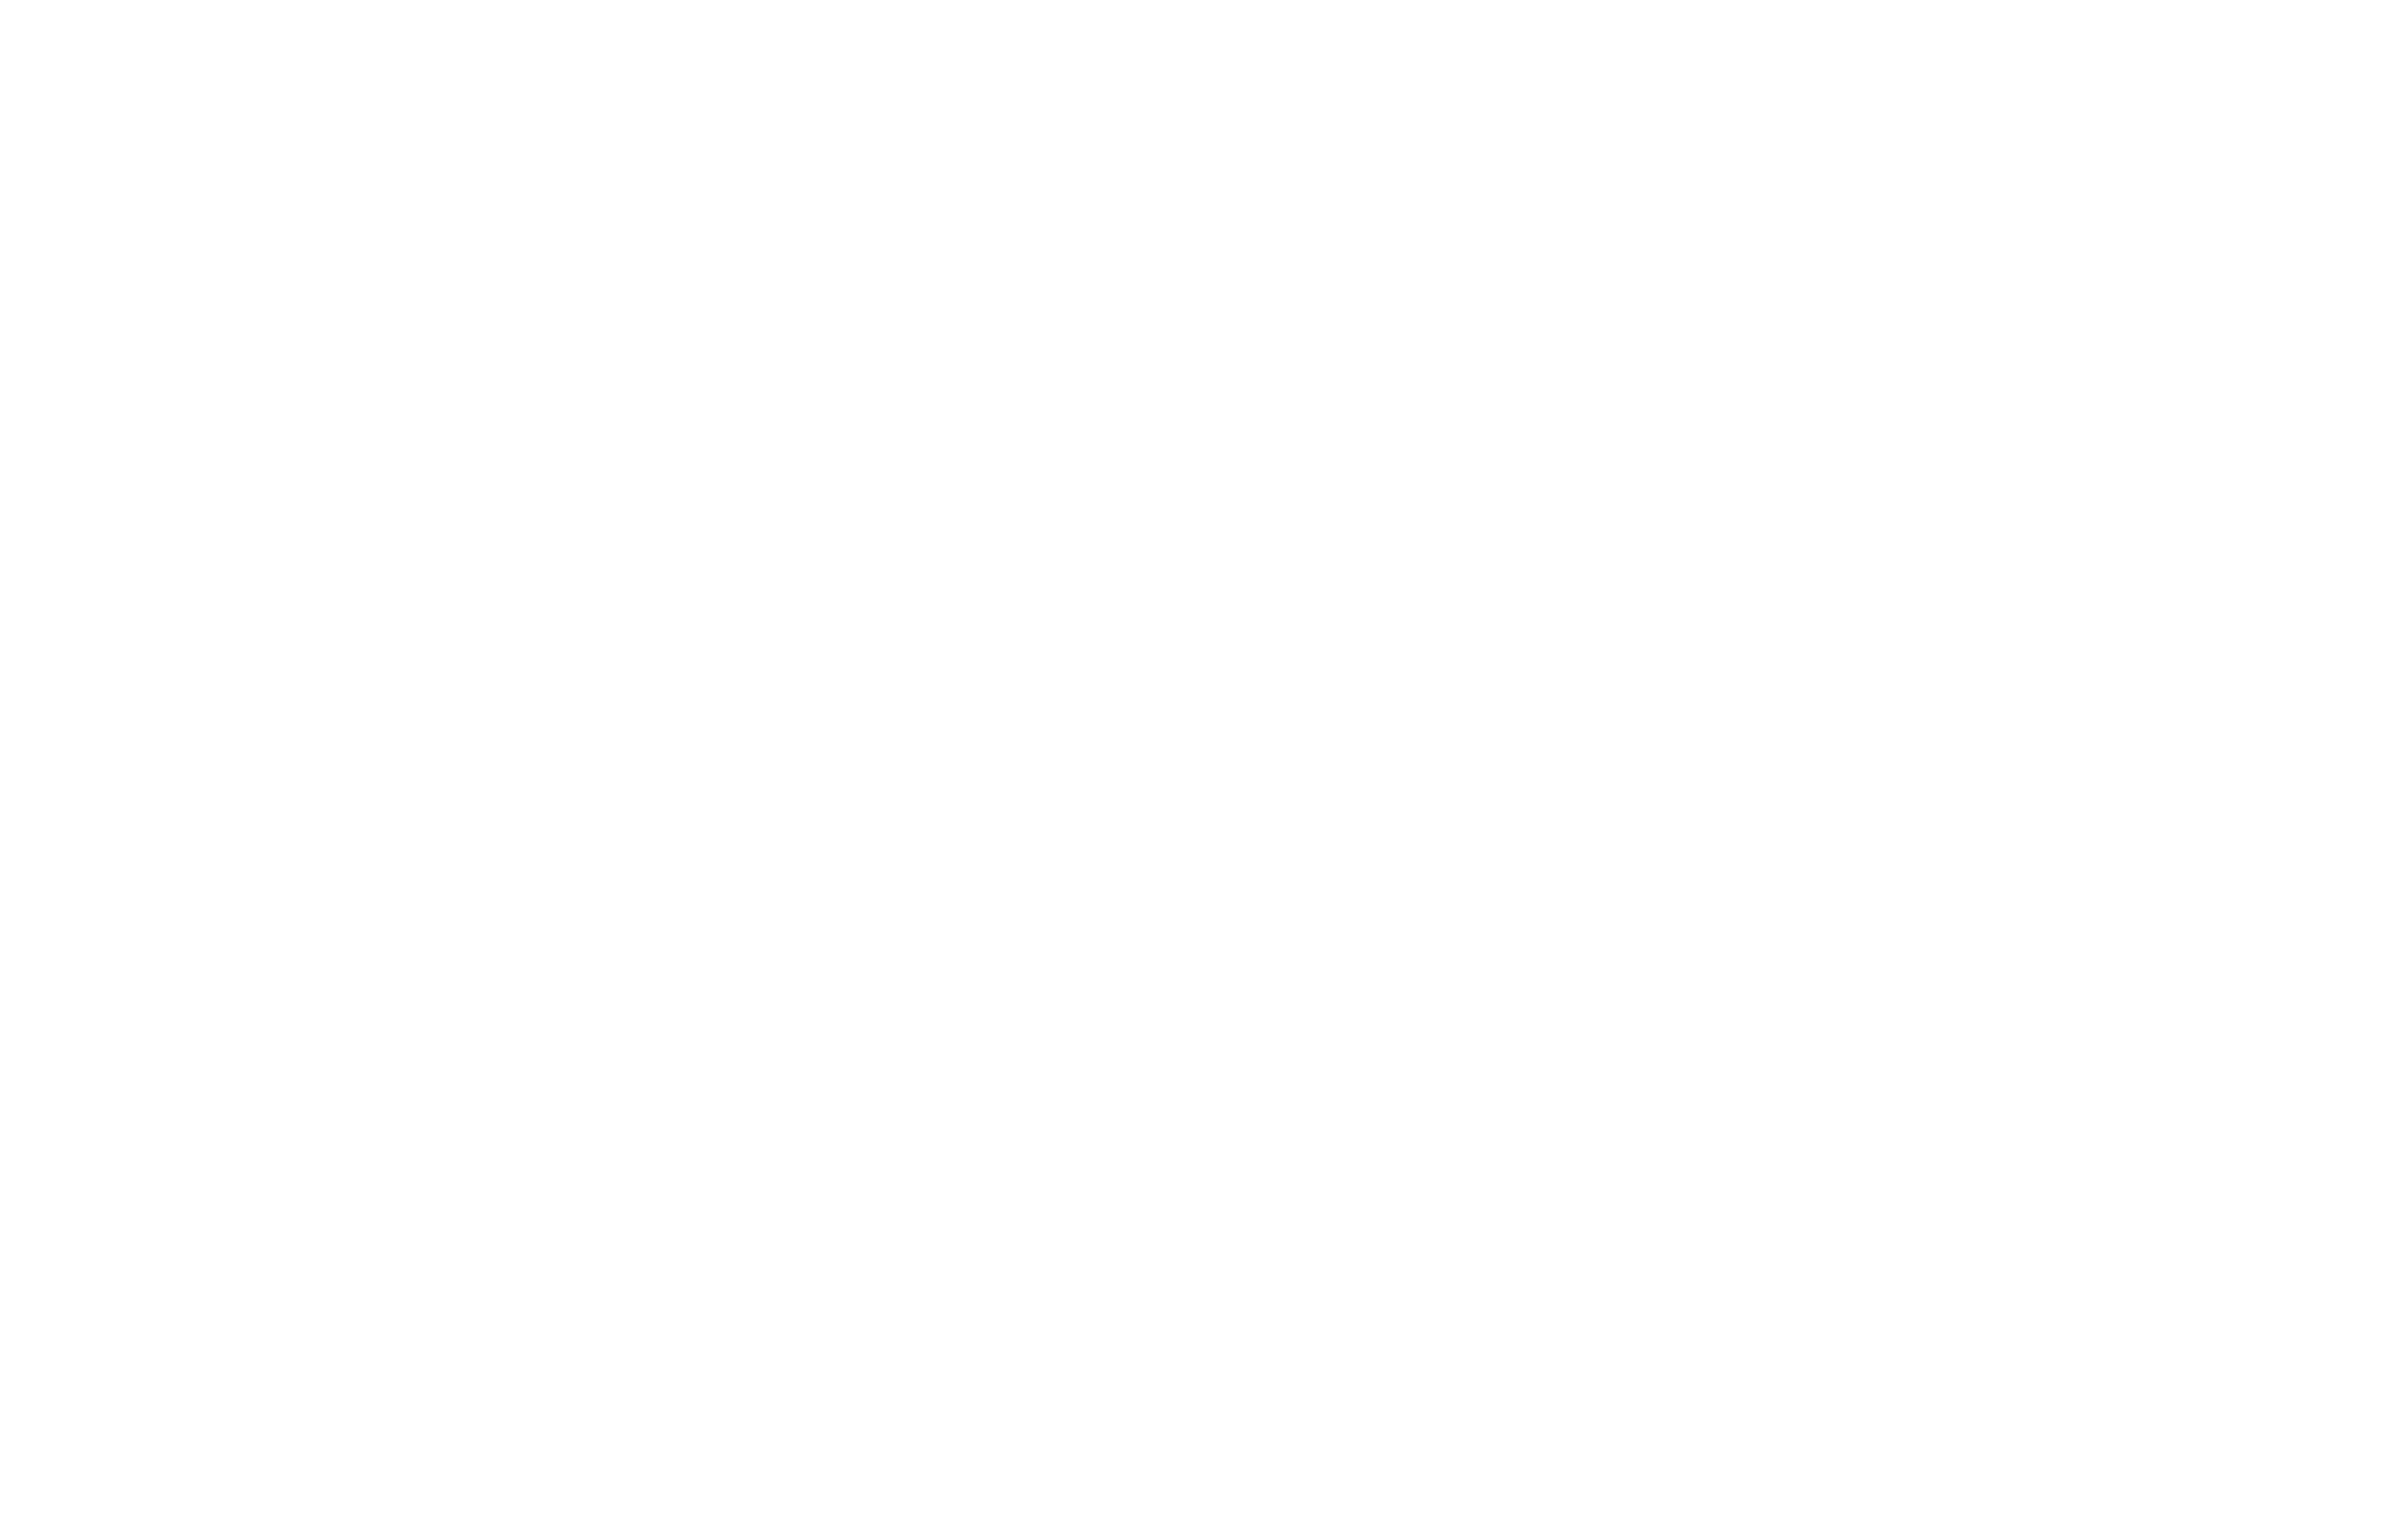 BGZ Studios